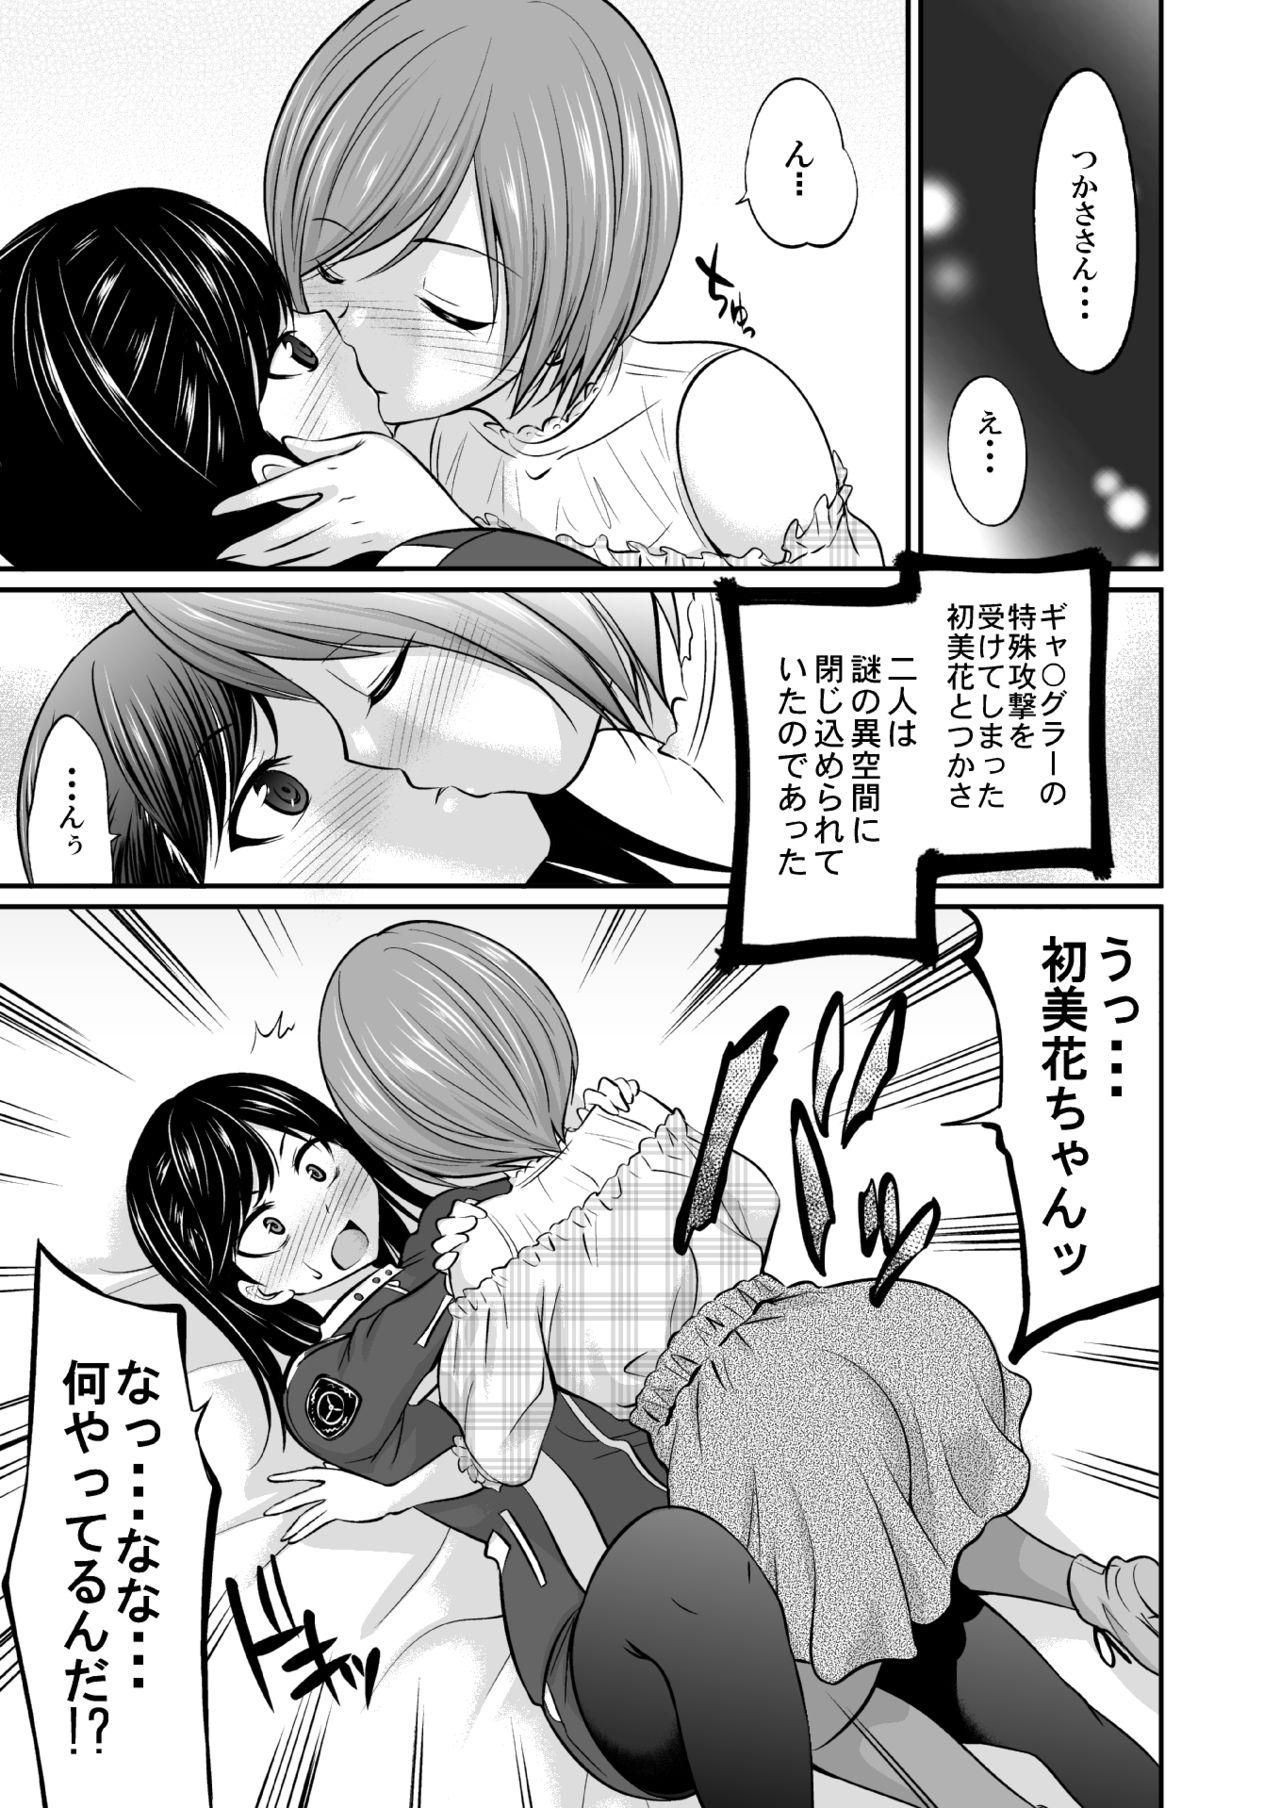 Culona Saitei de Saikou na Jikan - Kaitou sentai lupinranger vs keisatsu sentai patranger Massage Sex - Page 2